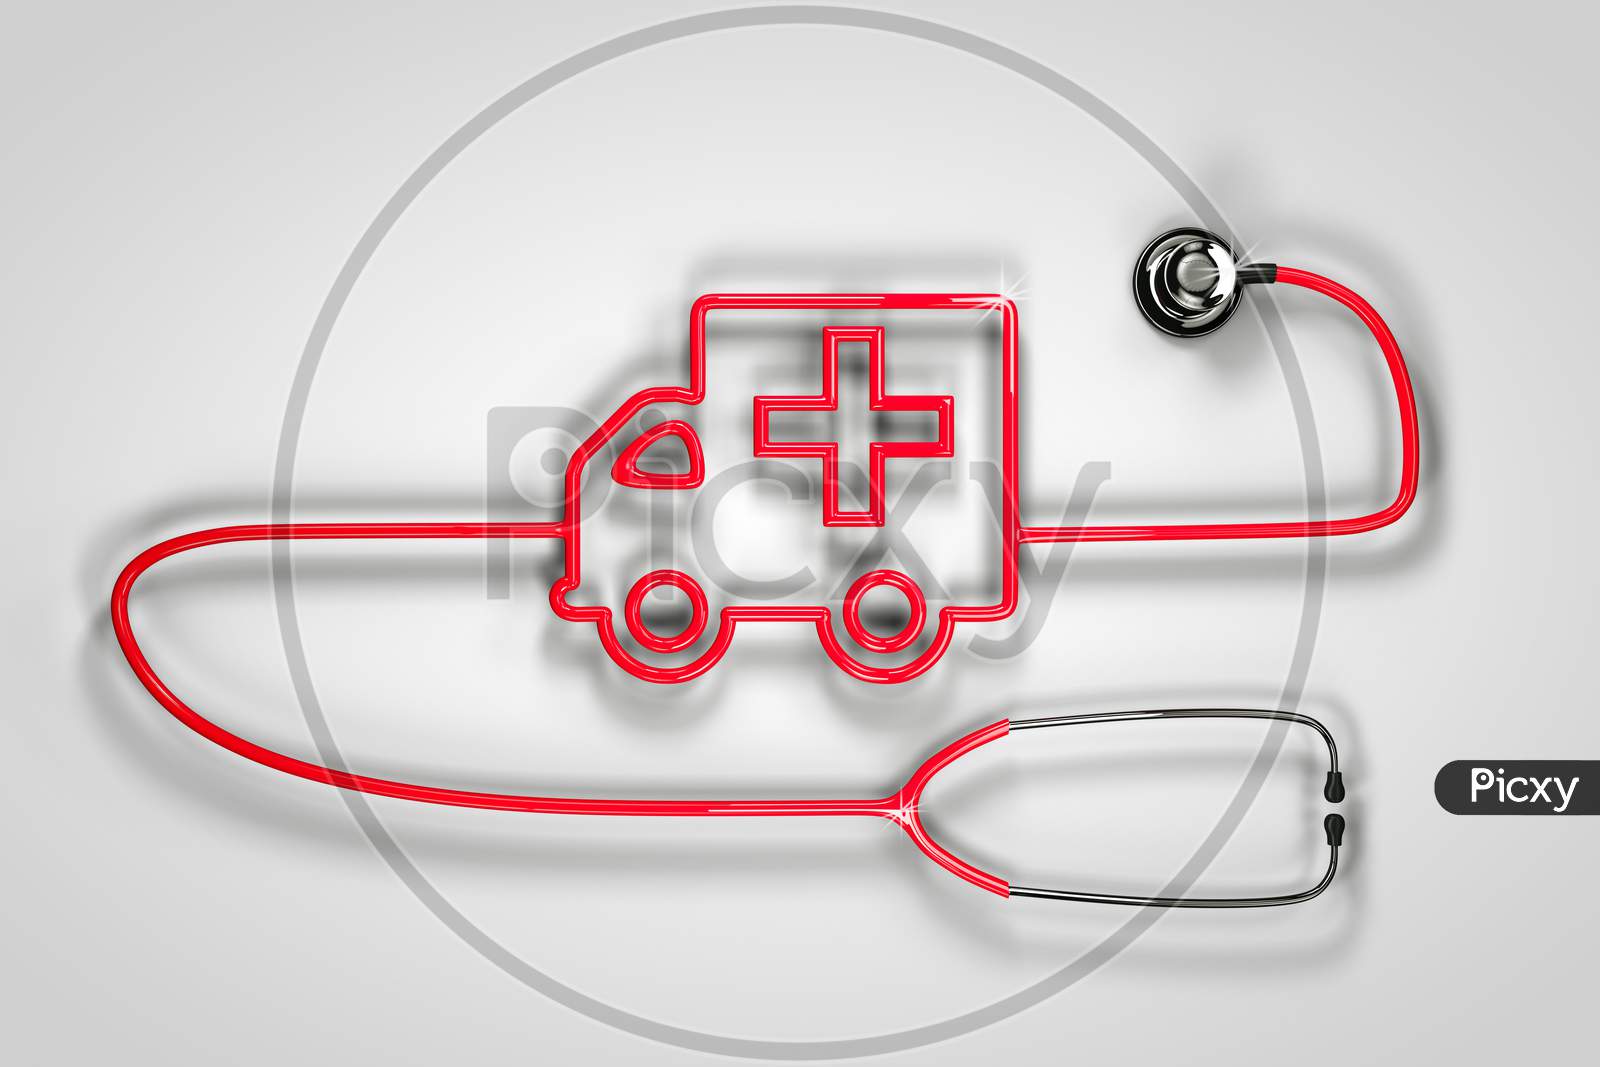 Stethoscope Shape Ambulance On White - Grey Background. 3D Render